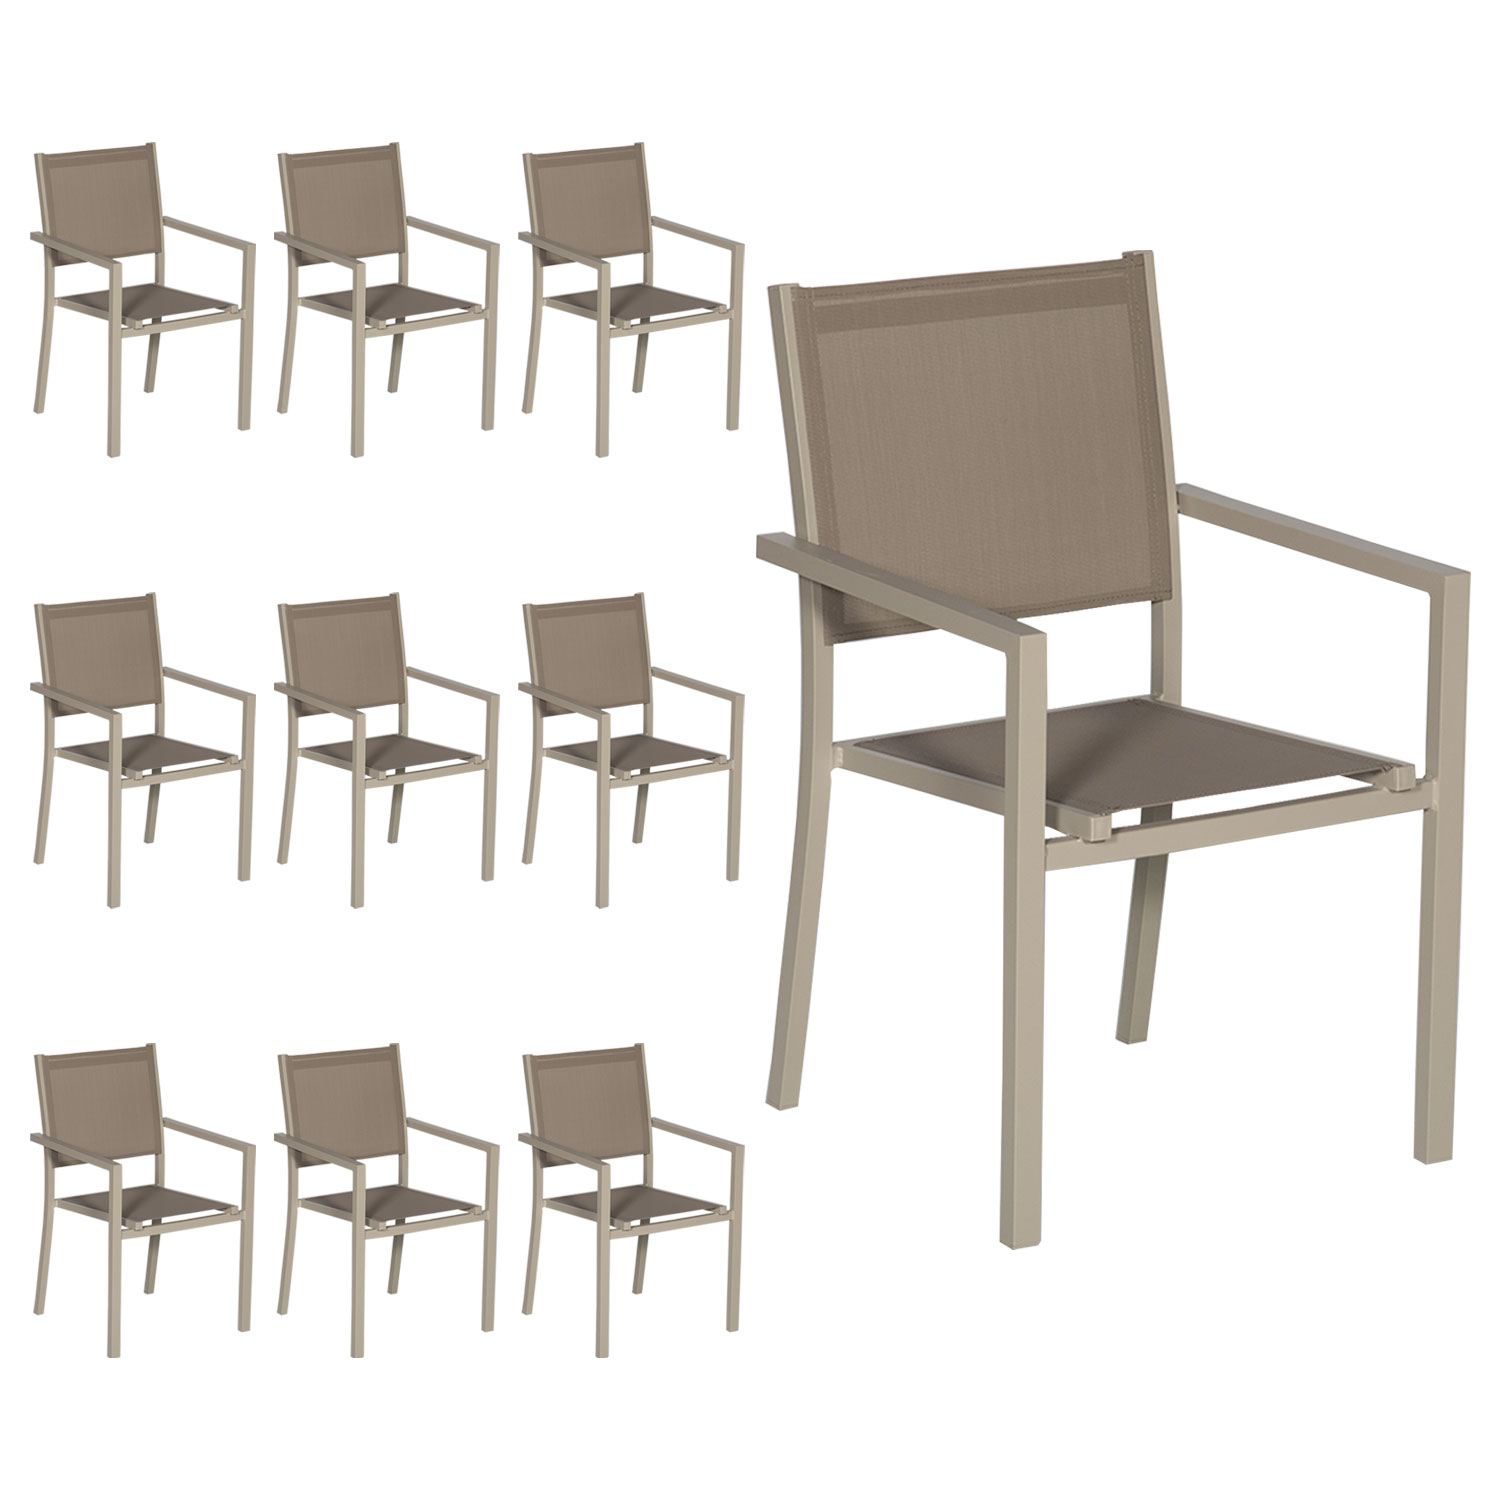 Lote de 10 sillas de aluminio color topo - Textileno topo